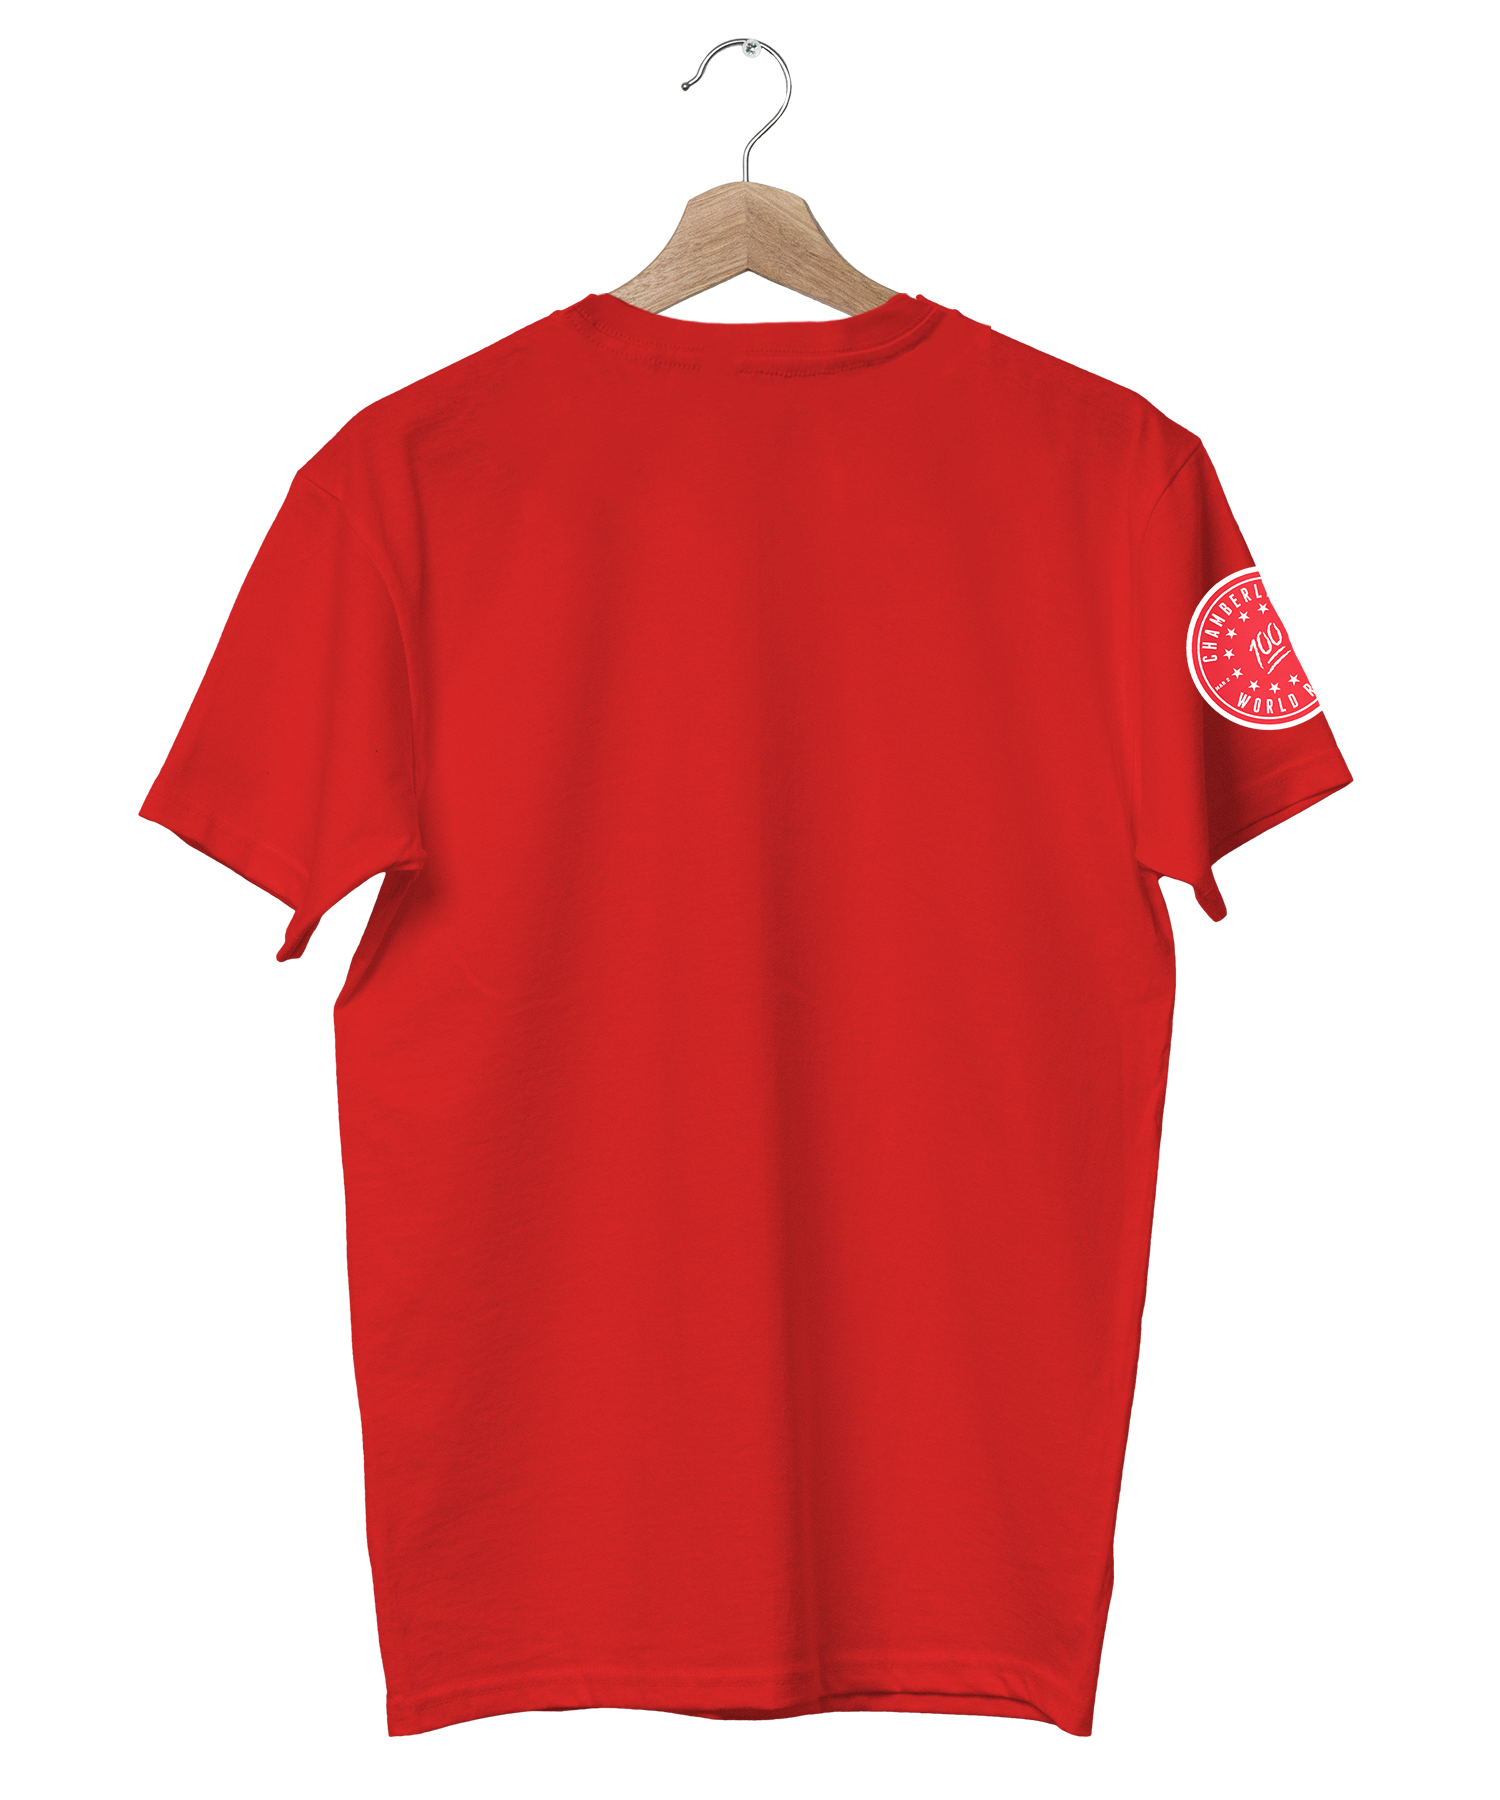 Wilt Chamberlain 100 T-Shirt Legends